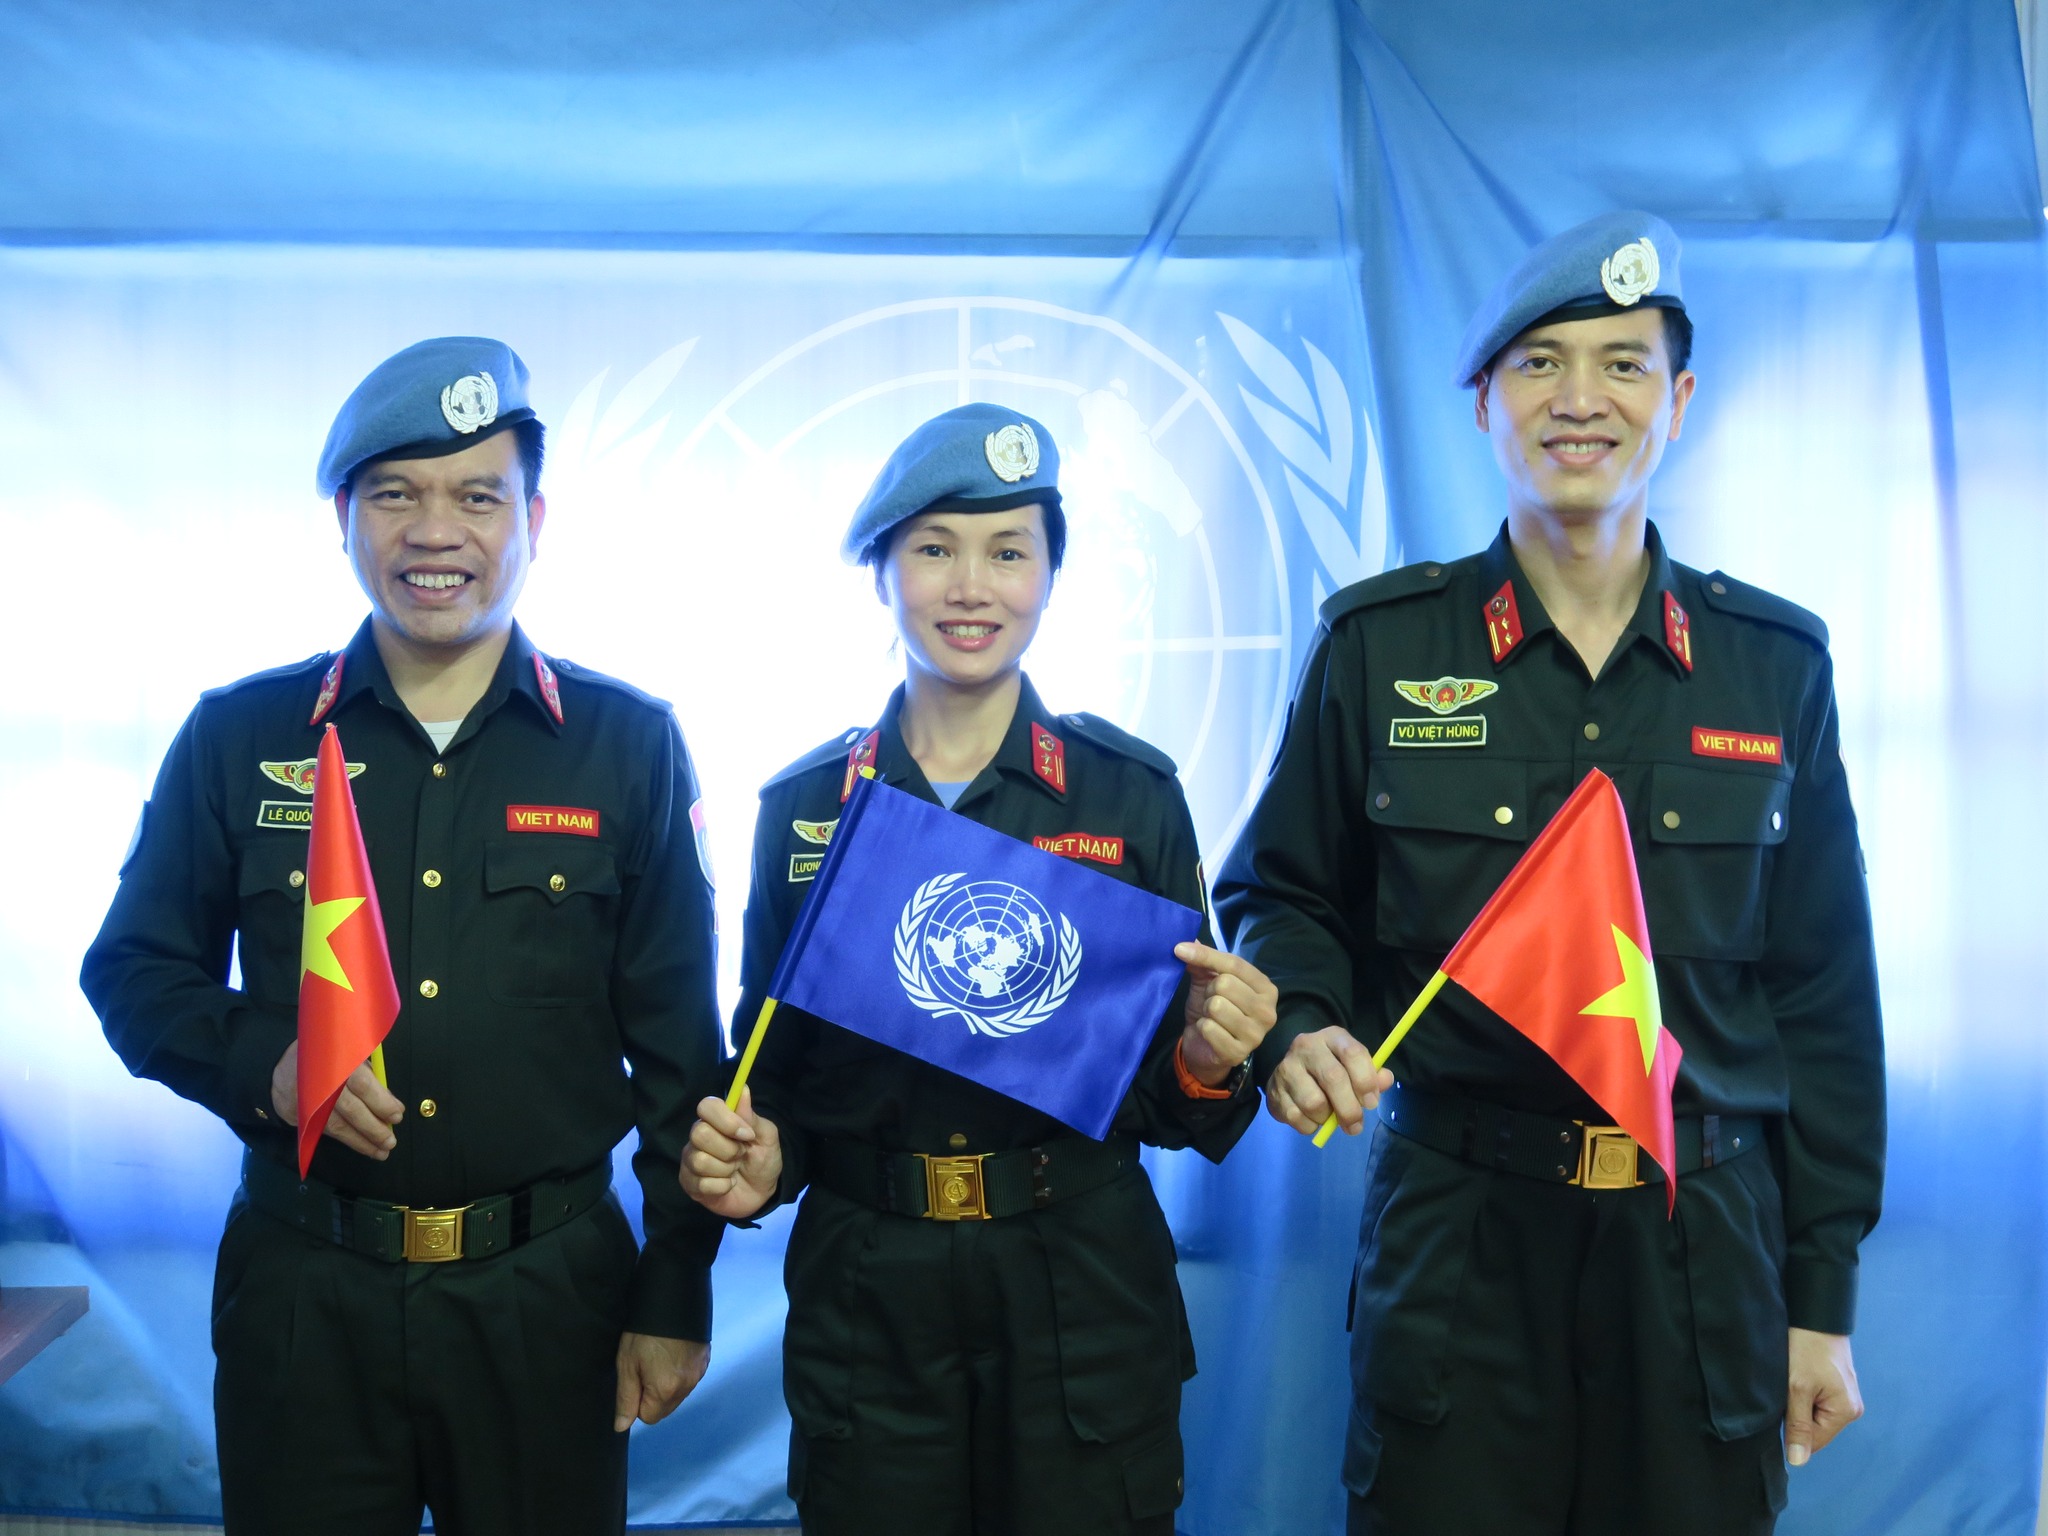 Tổ công tác của Bộ Công an Việt Nam tham gia gìn giữ hòa bình tại UNMISS, gồm Đại tá Lê Quốc Huy, Thượng tá Vũ Việt Hùng và Trung tá Lương Thị Trà Vinh, được triển khai từ tháng 10.2022. Ảnh: Thanh Hà